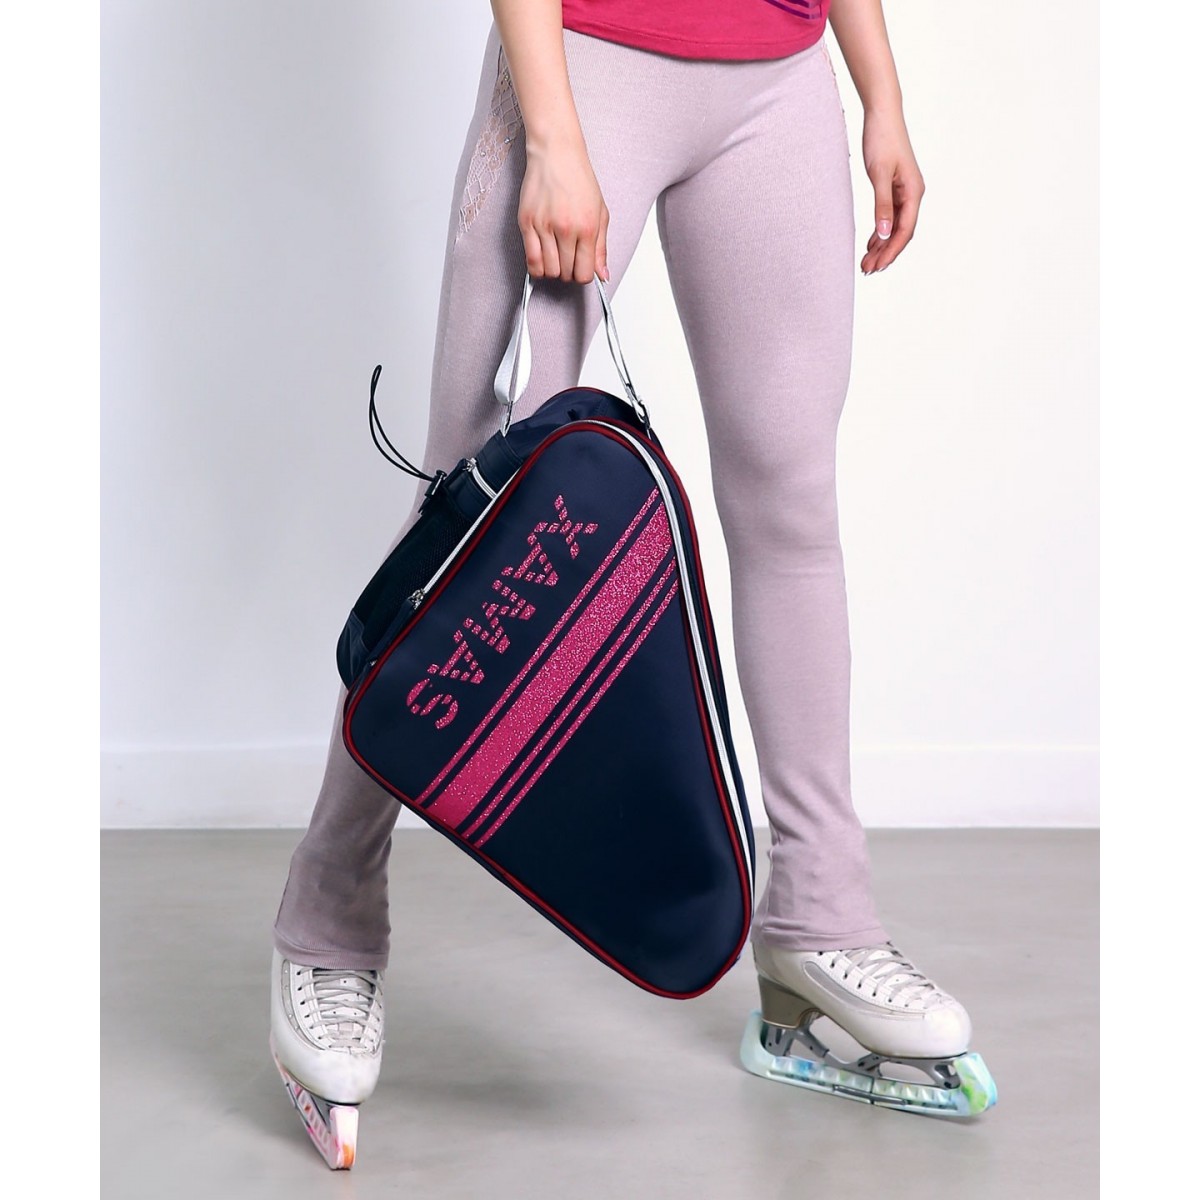 Premium Pro XAMAS De Luxe Skate Bag